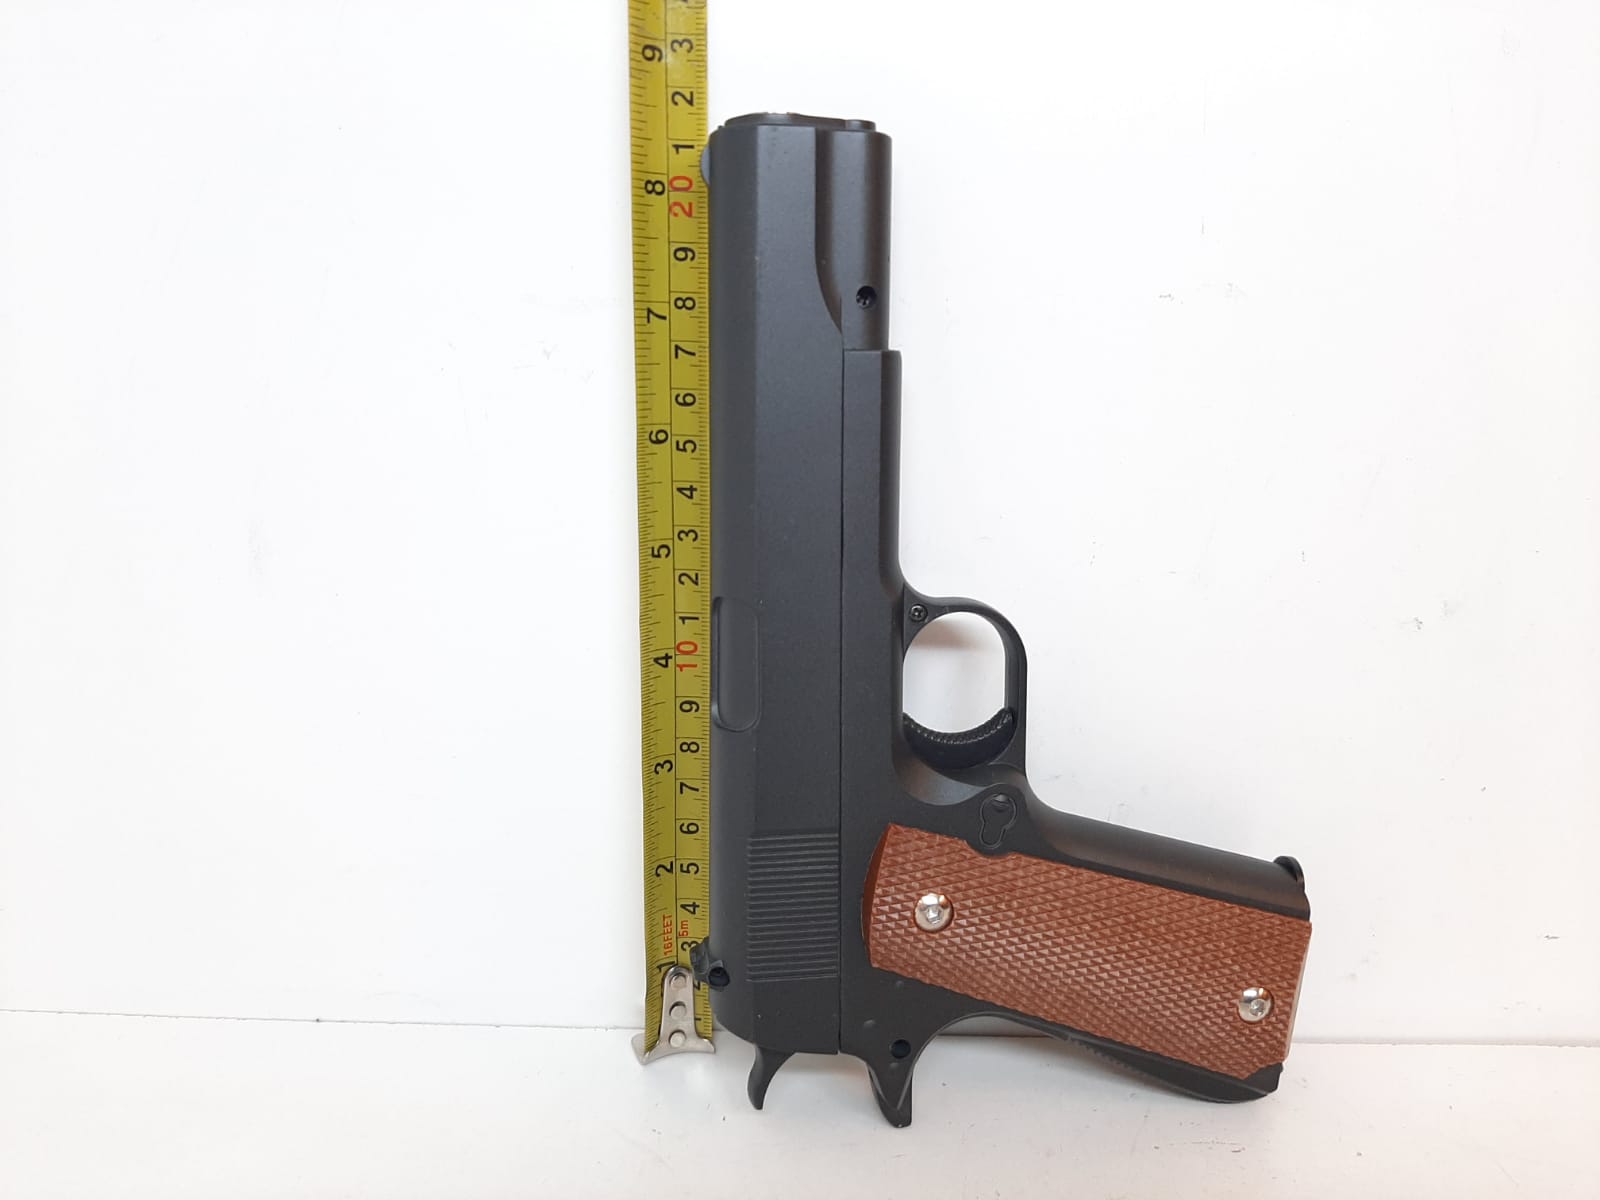 Soft Air Gun G13 - metall (Air Soft) Pistol